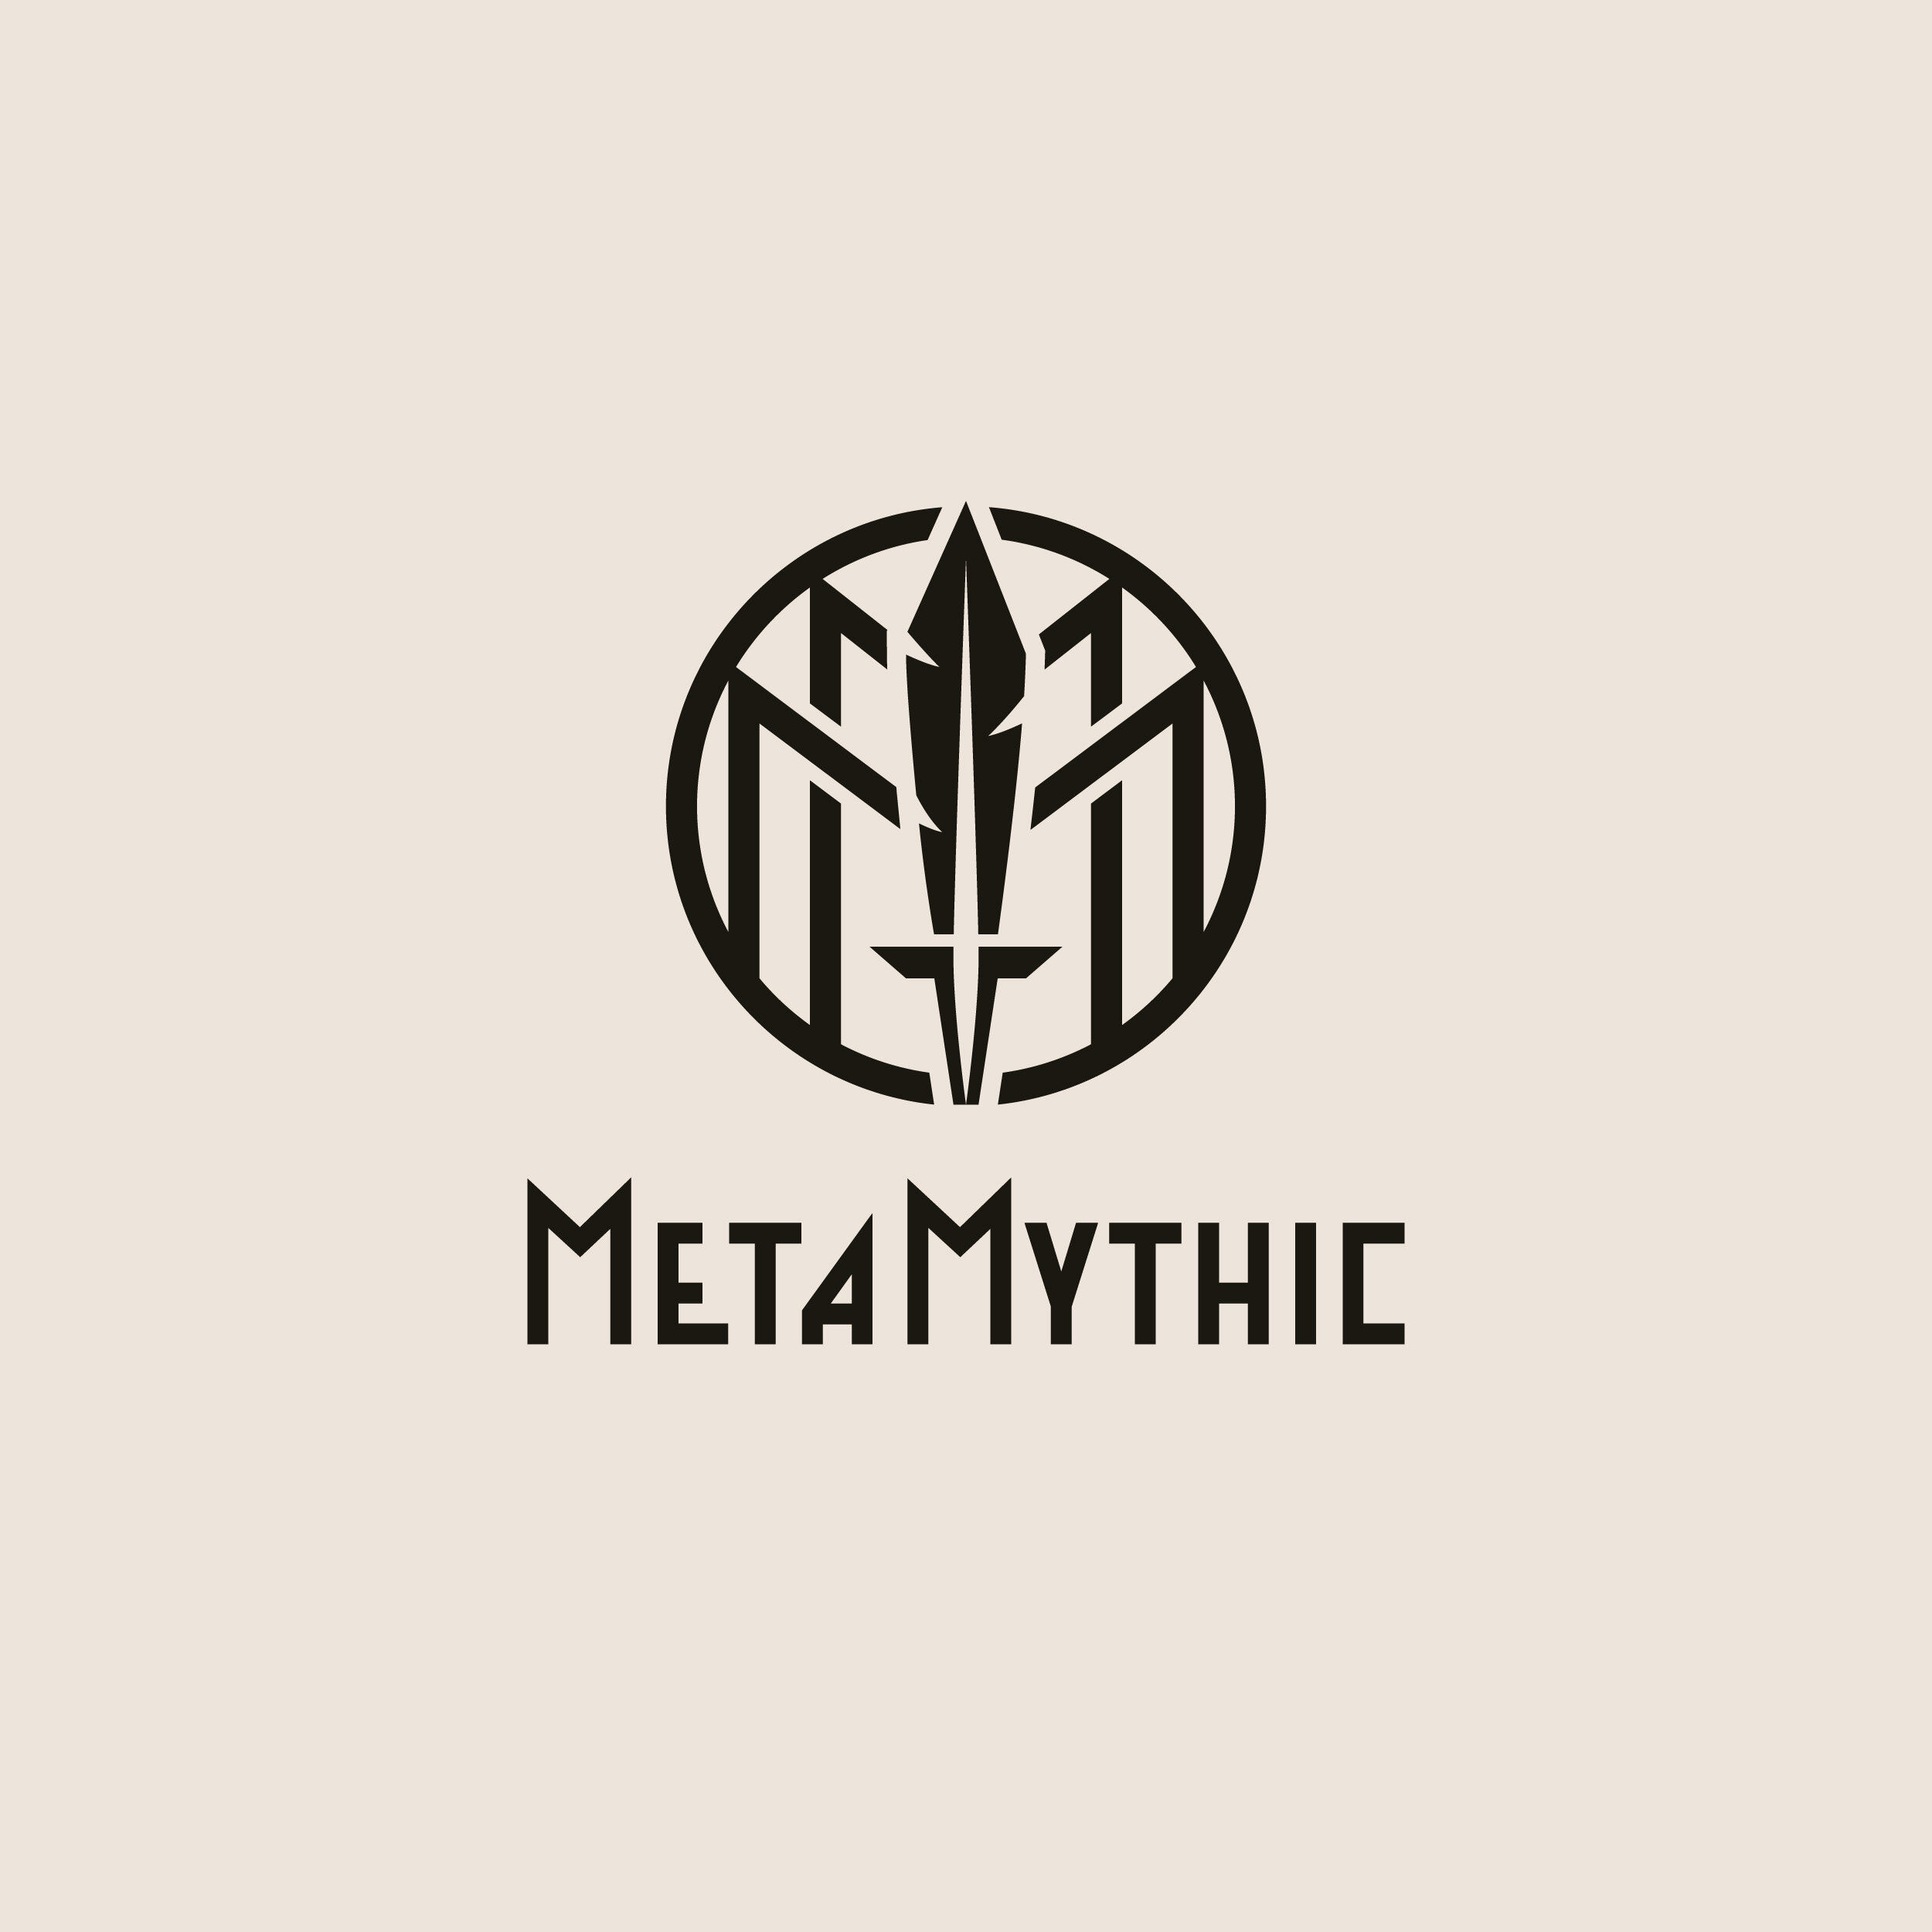 MetaMythic-Branding_Thumbnail-Light.jpg